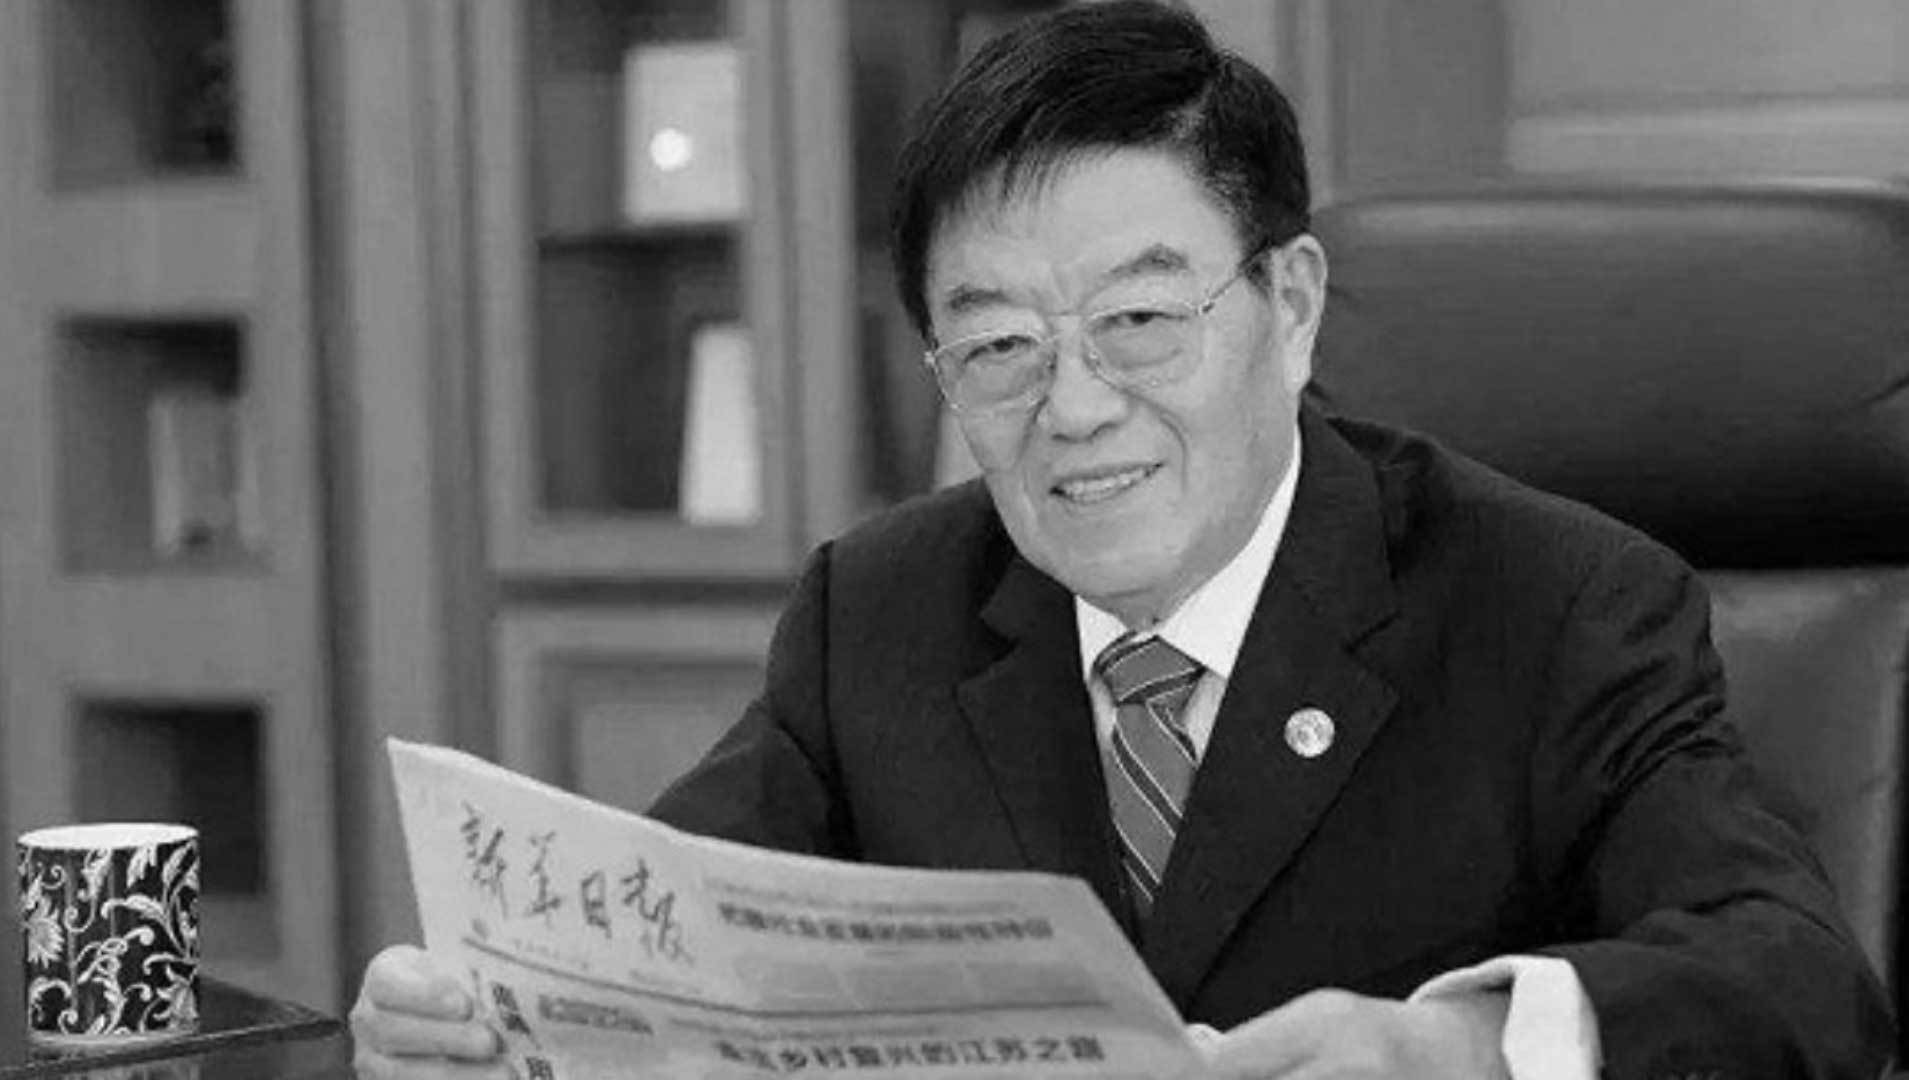 扬子江药业董事长徐镜人突发疾病去世:年